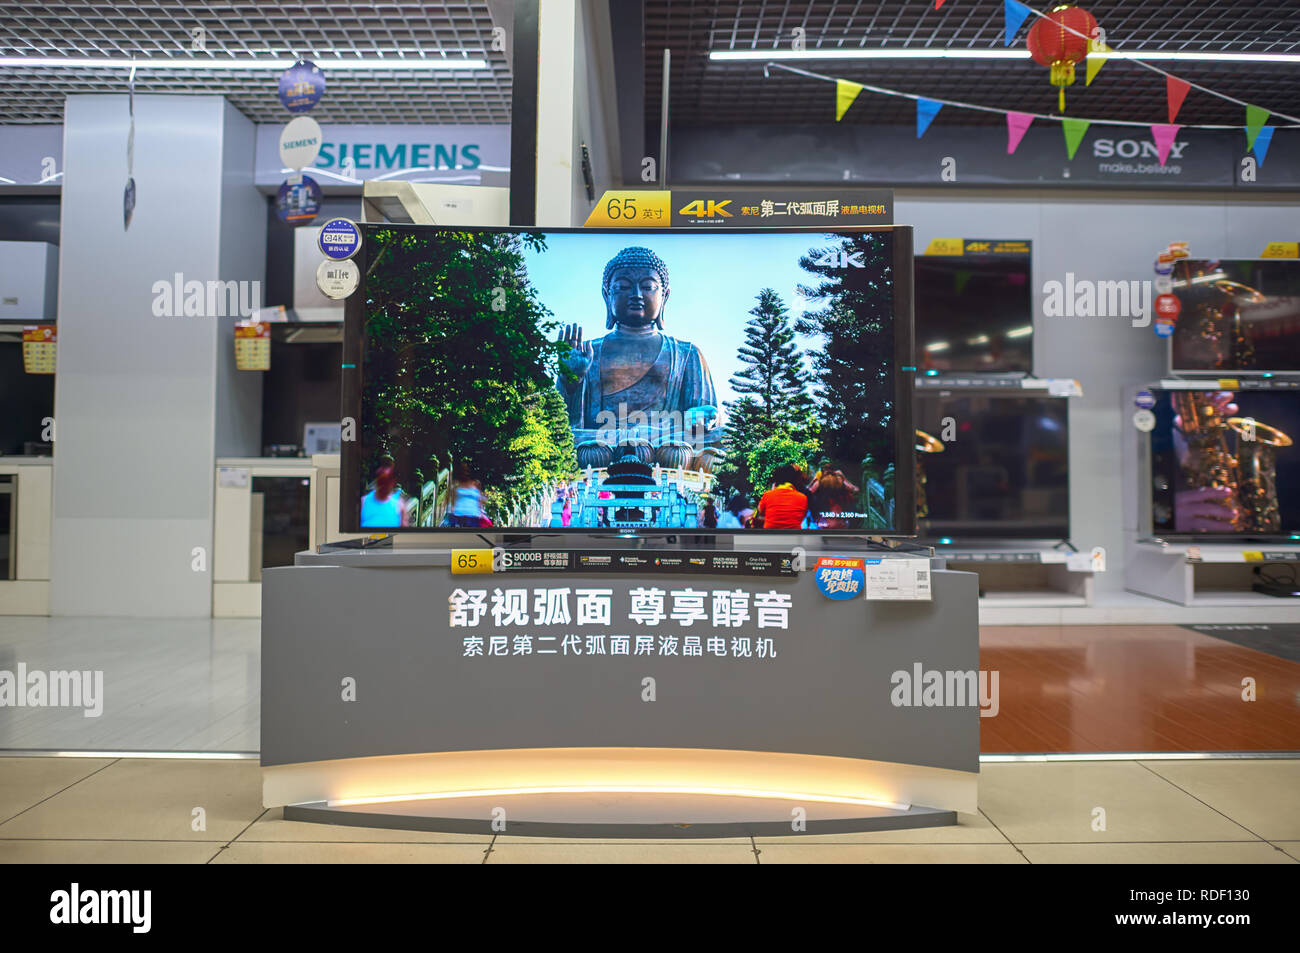 SHENZHEN, Cina - 19 gennaio 2015: un negozio di elettronica presso il centro commerciale di Shenzhen. Foto Stock